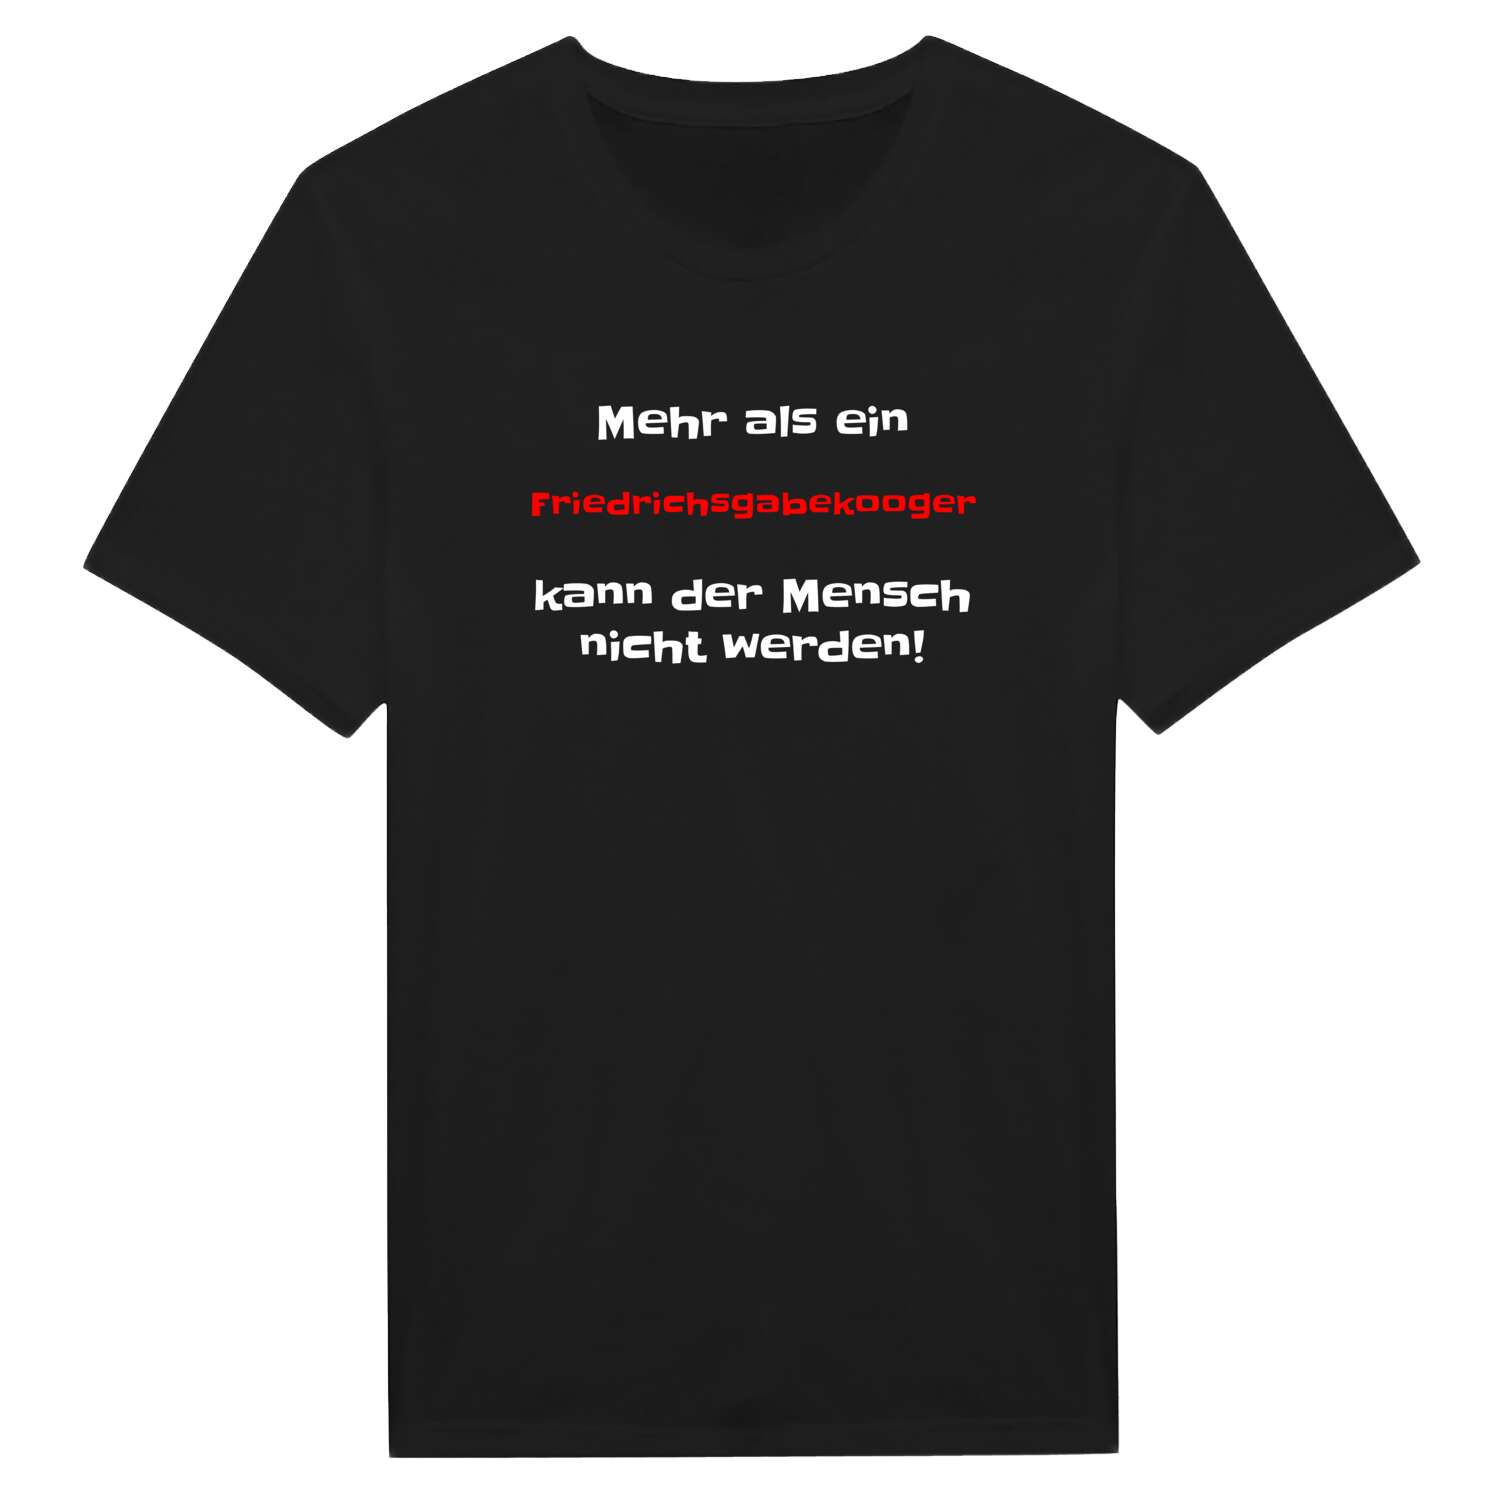 Friedrichsgabekoog T-Shirt »Mehr als ein«